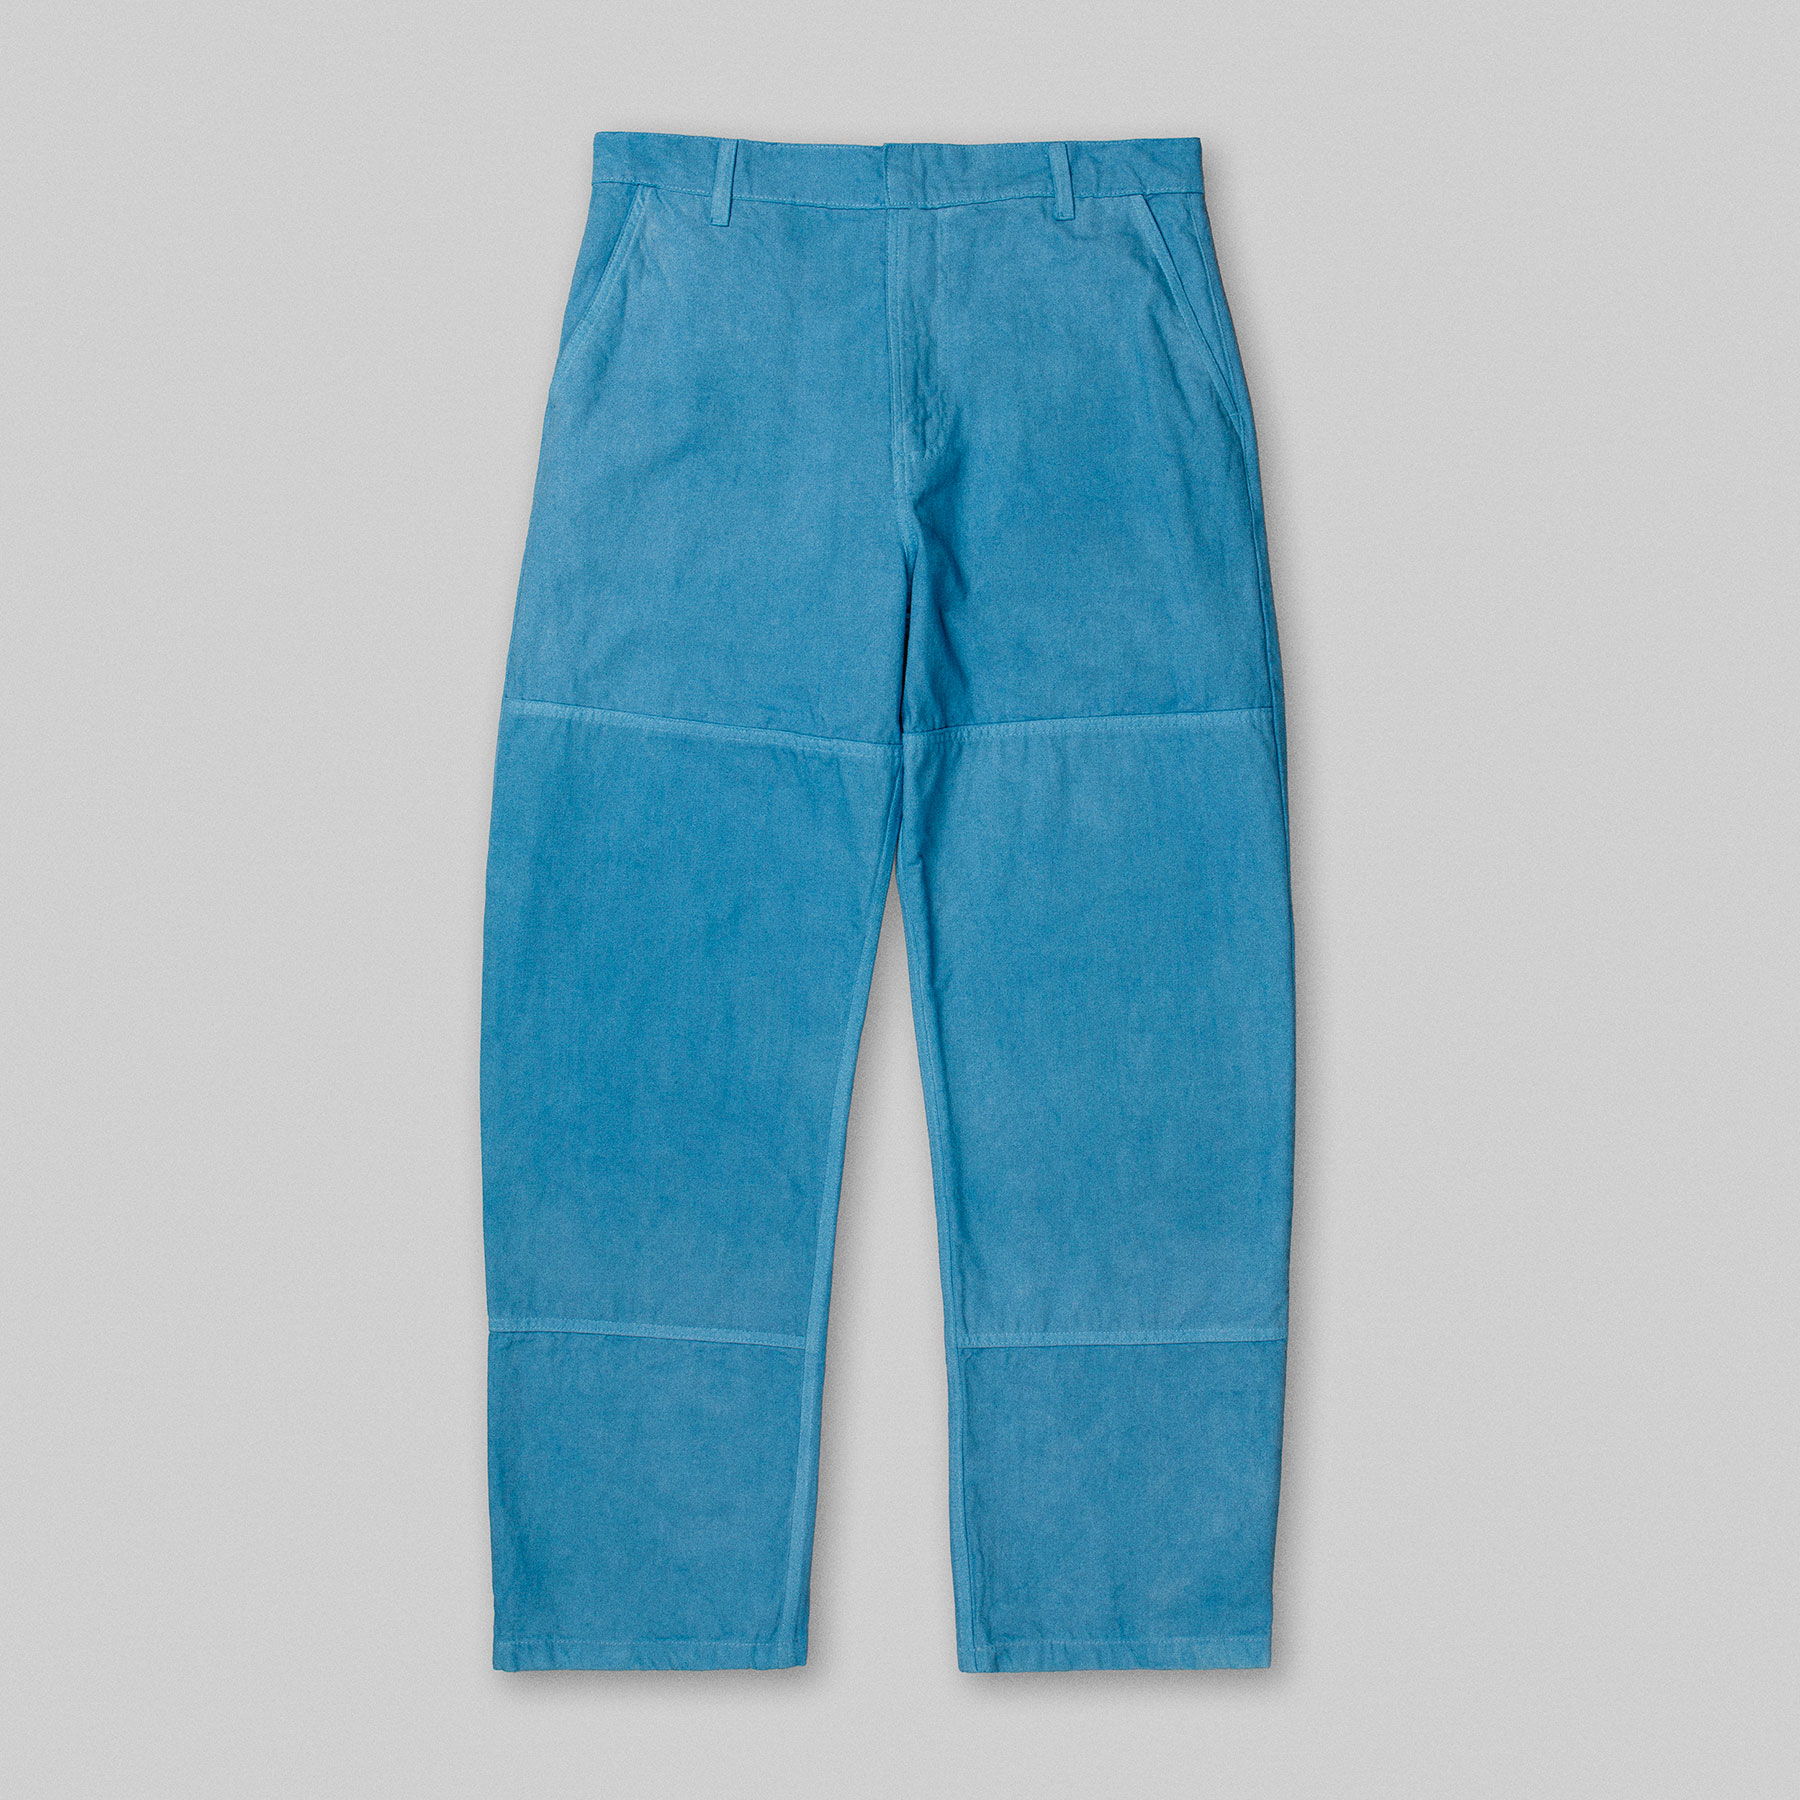 Pantalon 4 POCKET par Arpenteur en coloris Pastel bleu glacier